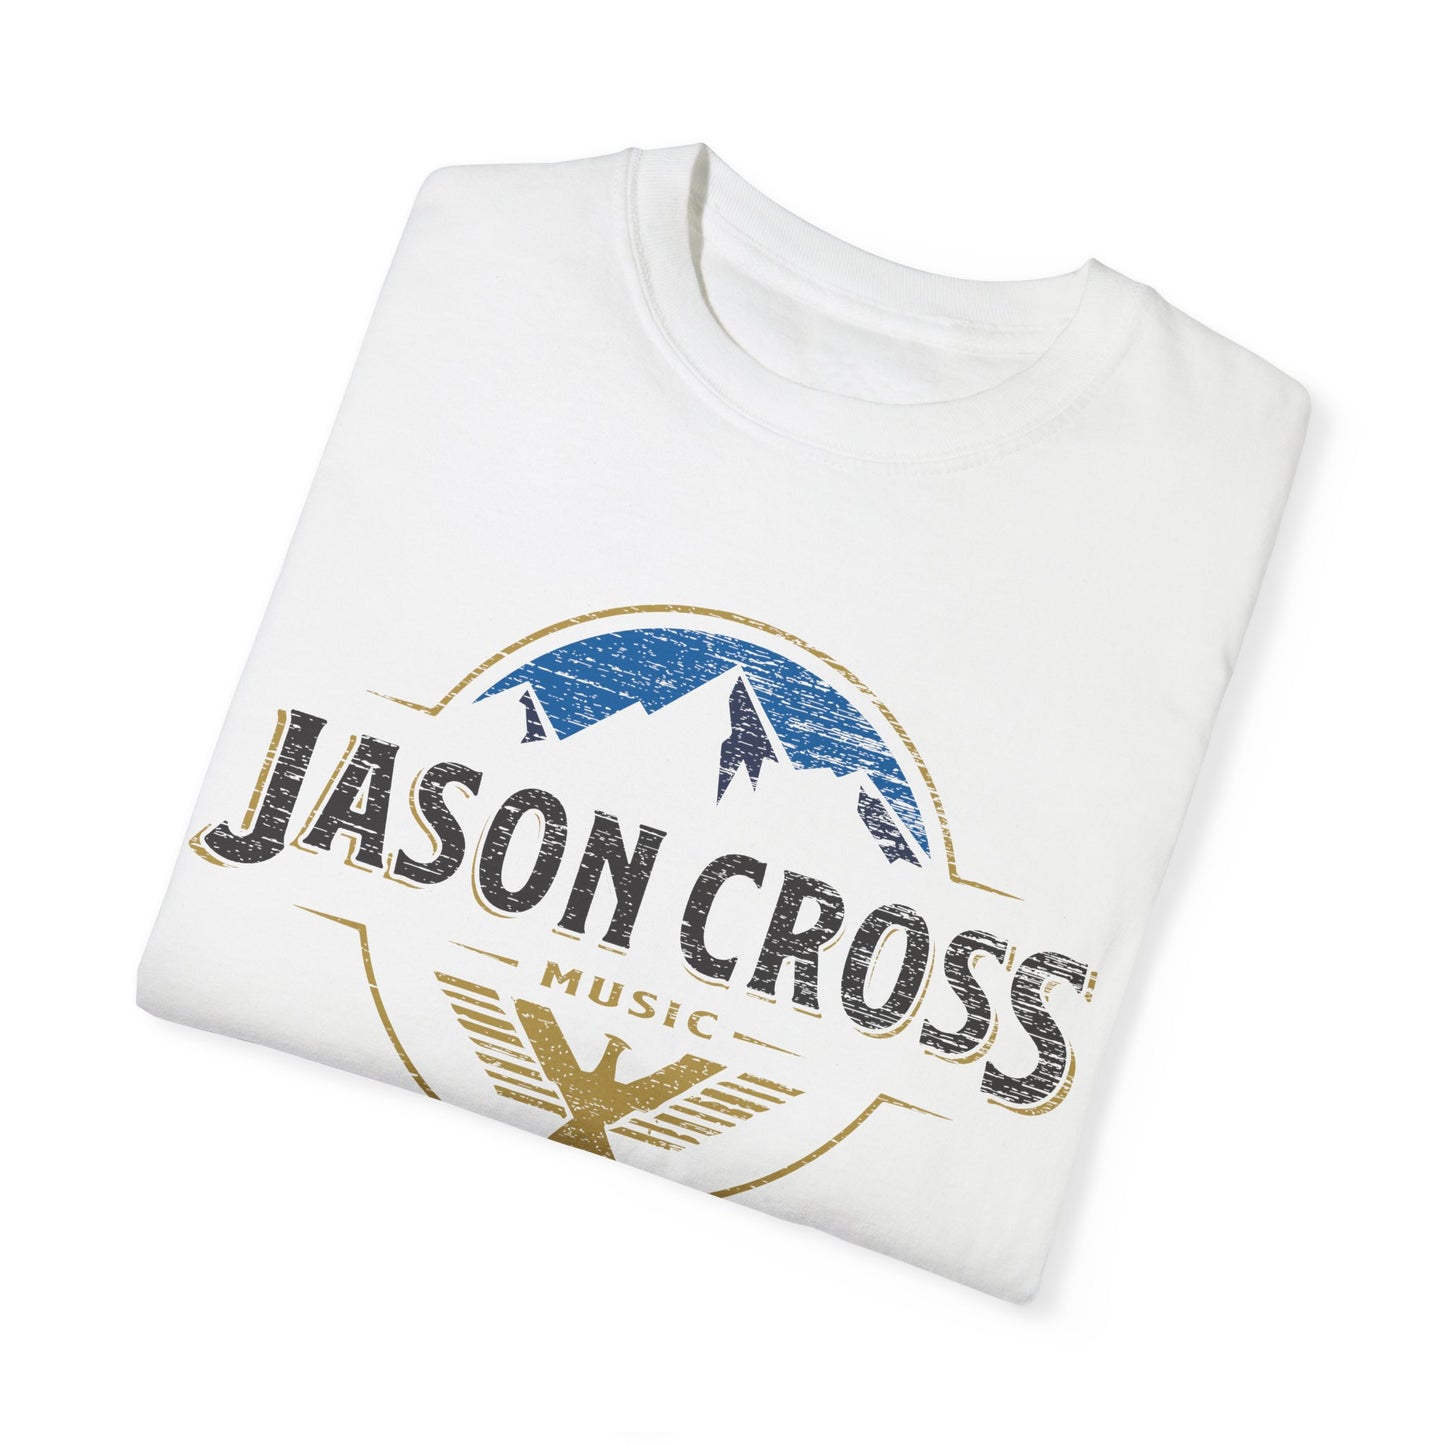 Jason Cross BEER T Shirt